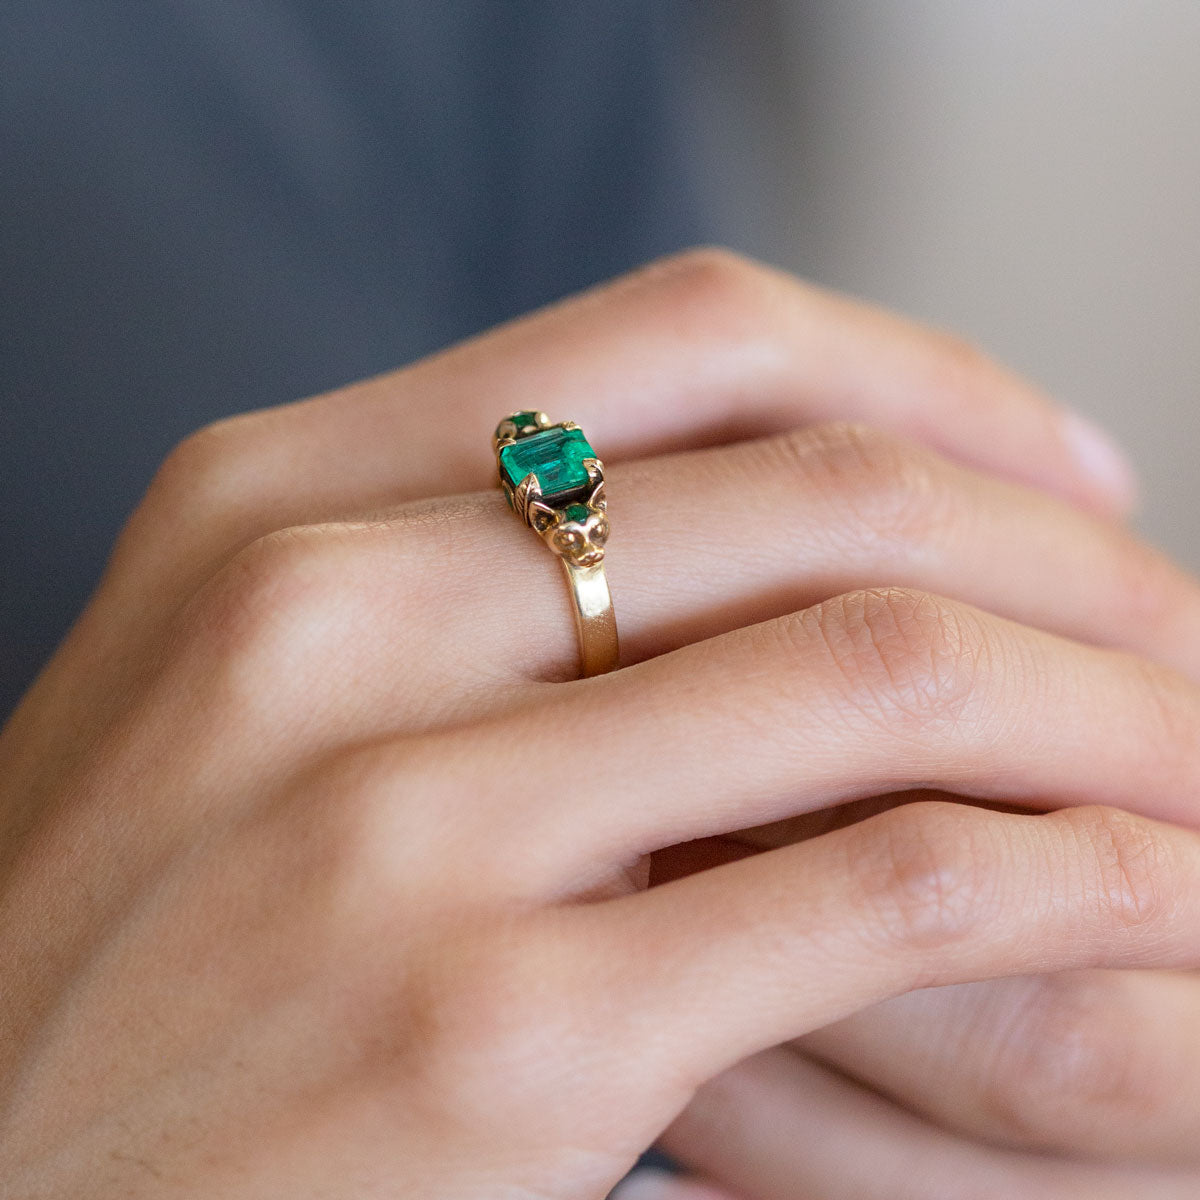 92.5% 14 Carat Green Emerald Gemstone Brass Ring at Rs 501 in Jaipur